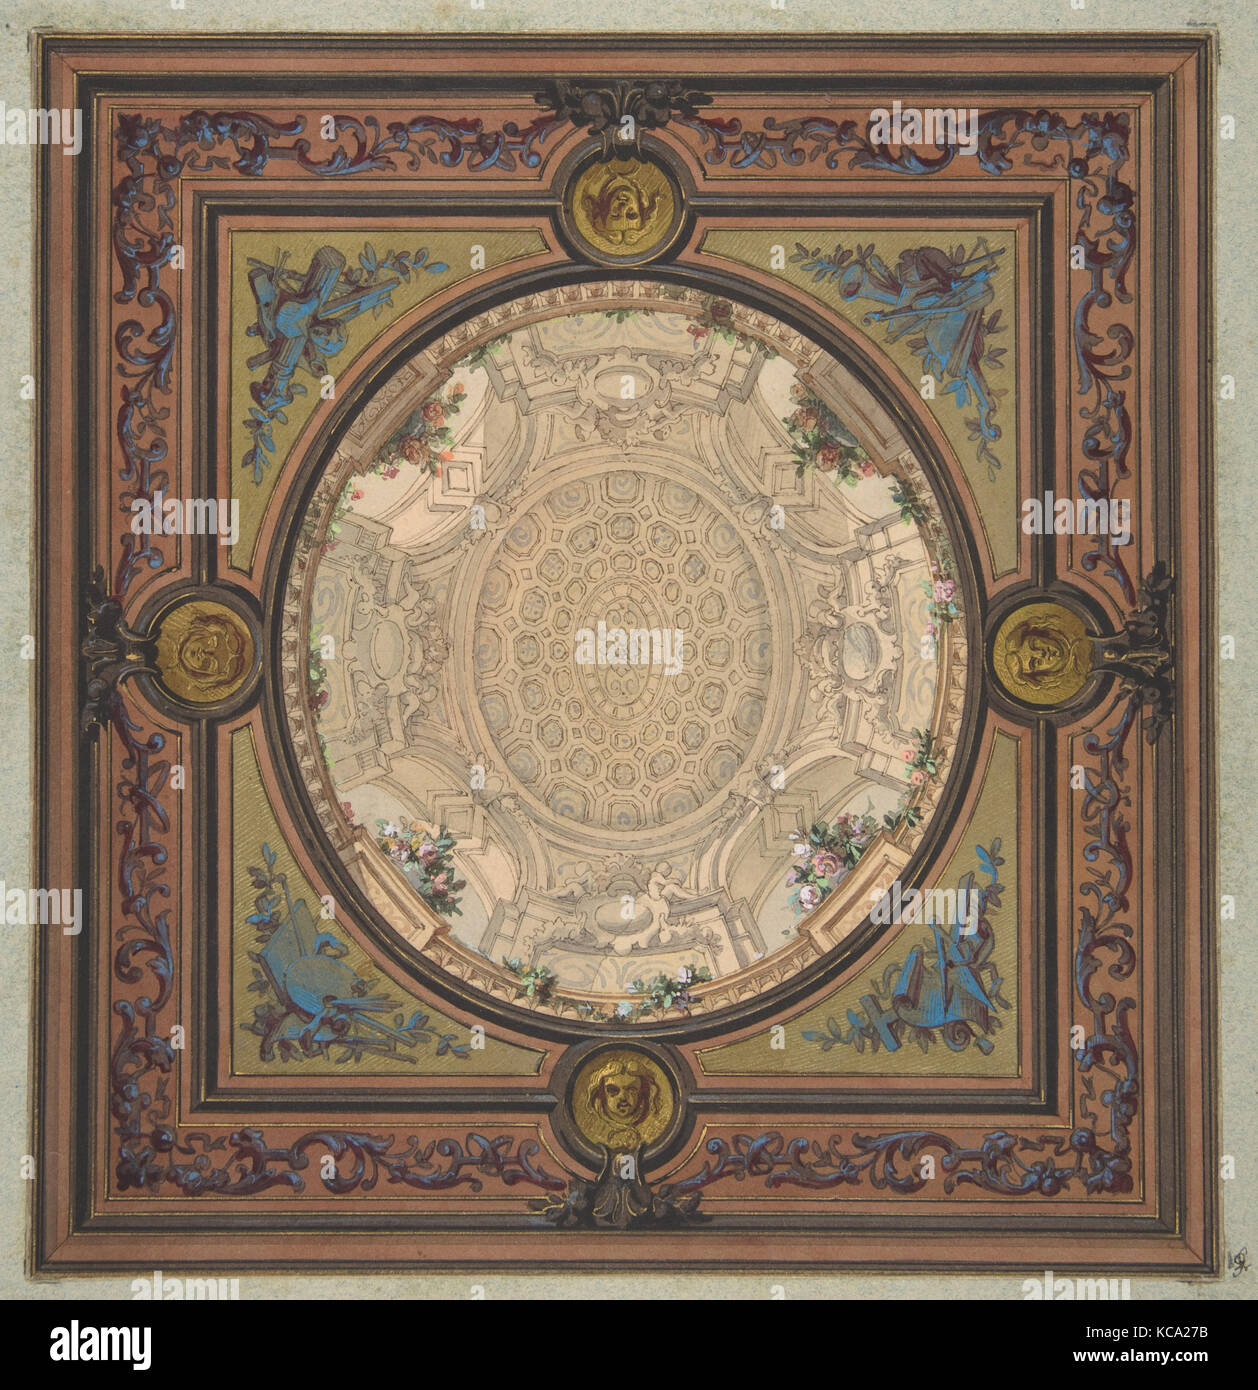 Design pour la décoration d'un plafond avec un trompe l'œil d'une coupole à caissons, Jules-Edmond-Charles Lachaise, 1830-97 Banque D'Images